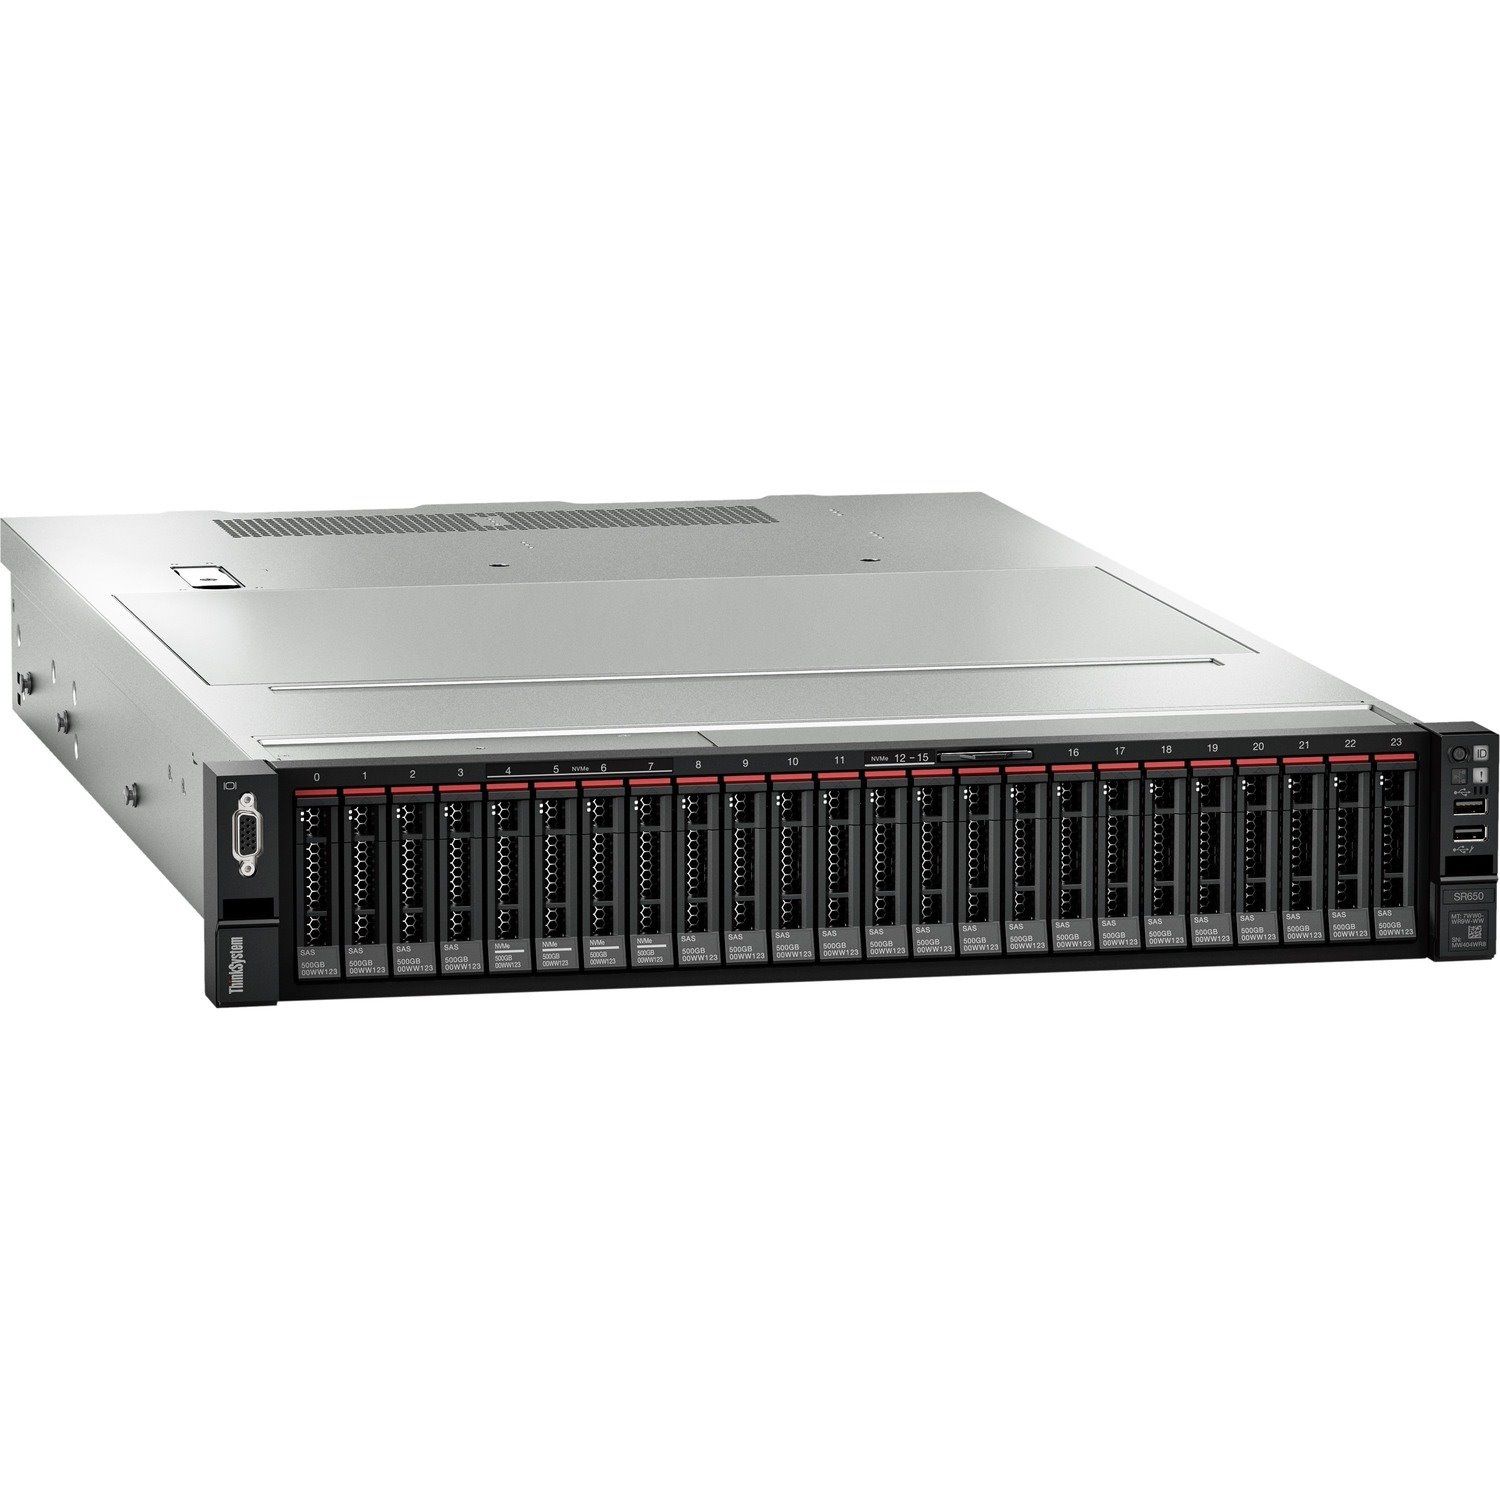 Lenovo ThinkSystem SR650 7X06A0FENA 2U Rack Server - 1 x Intel Xeon Silver 4214 2.20 GHz - 16 GB RAM - Serial ATA/600 Controller